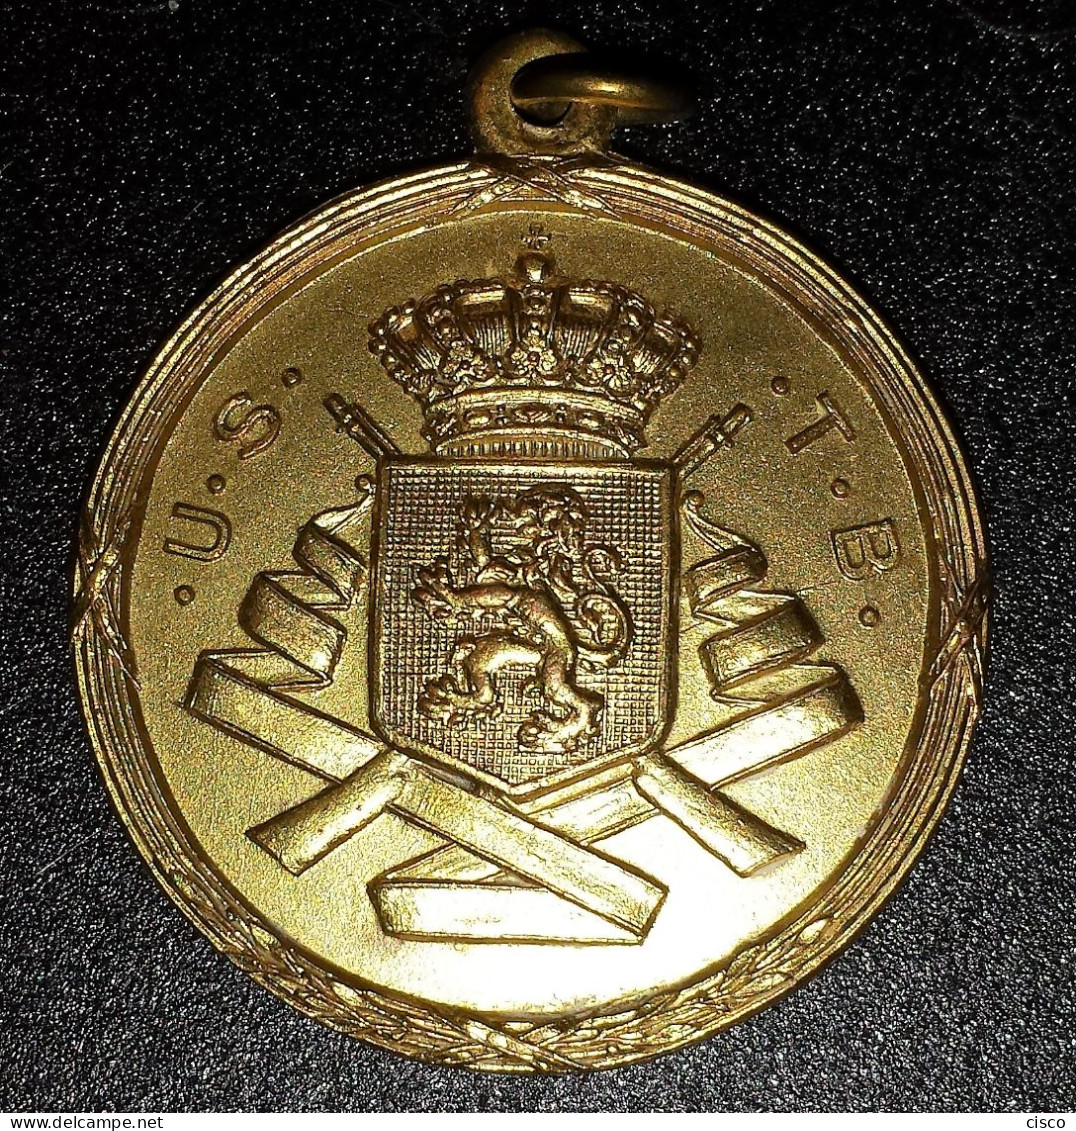 BELGIQUE Médaille Prix De Concours De Tir U.S.T.B 1948 - Gettoni Di Comuni